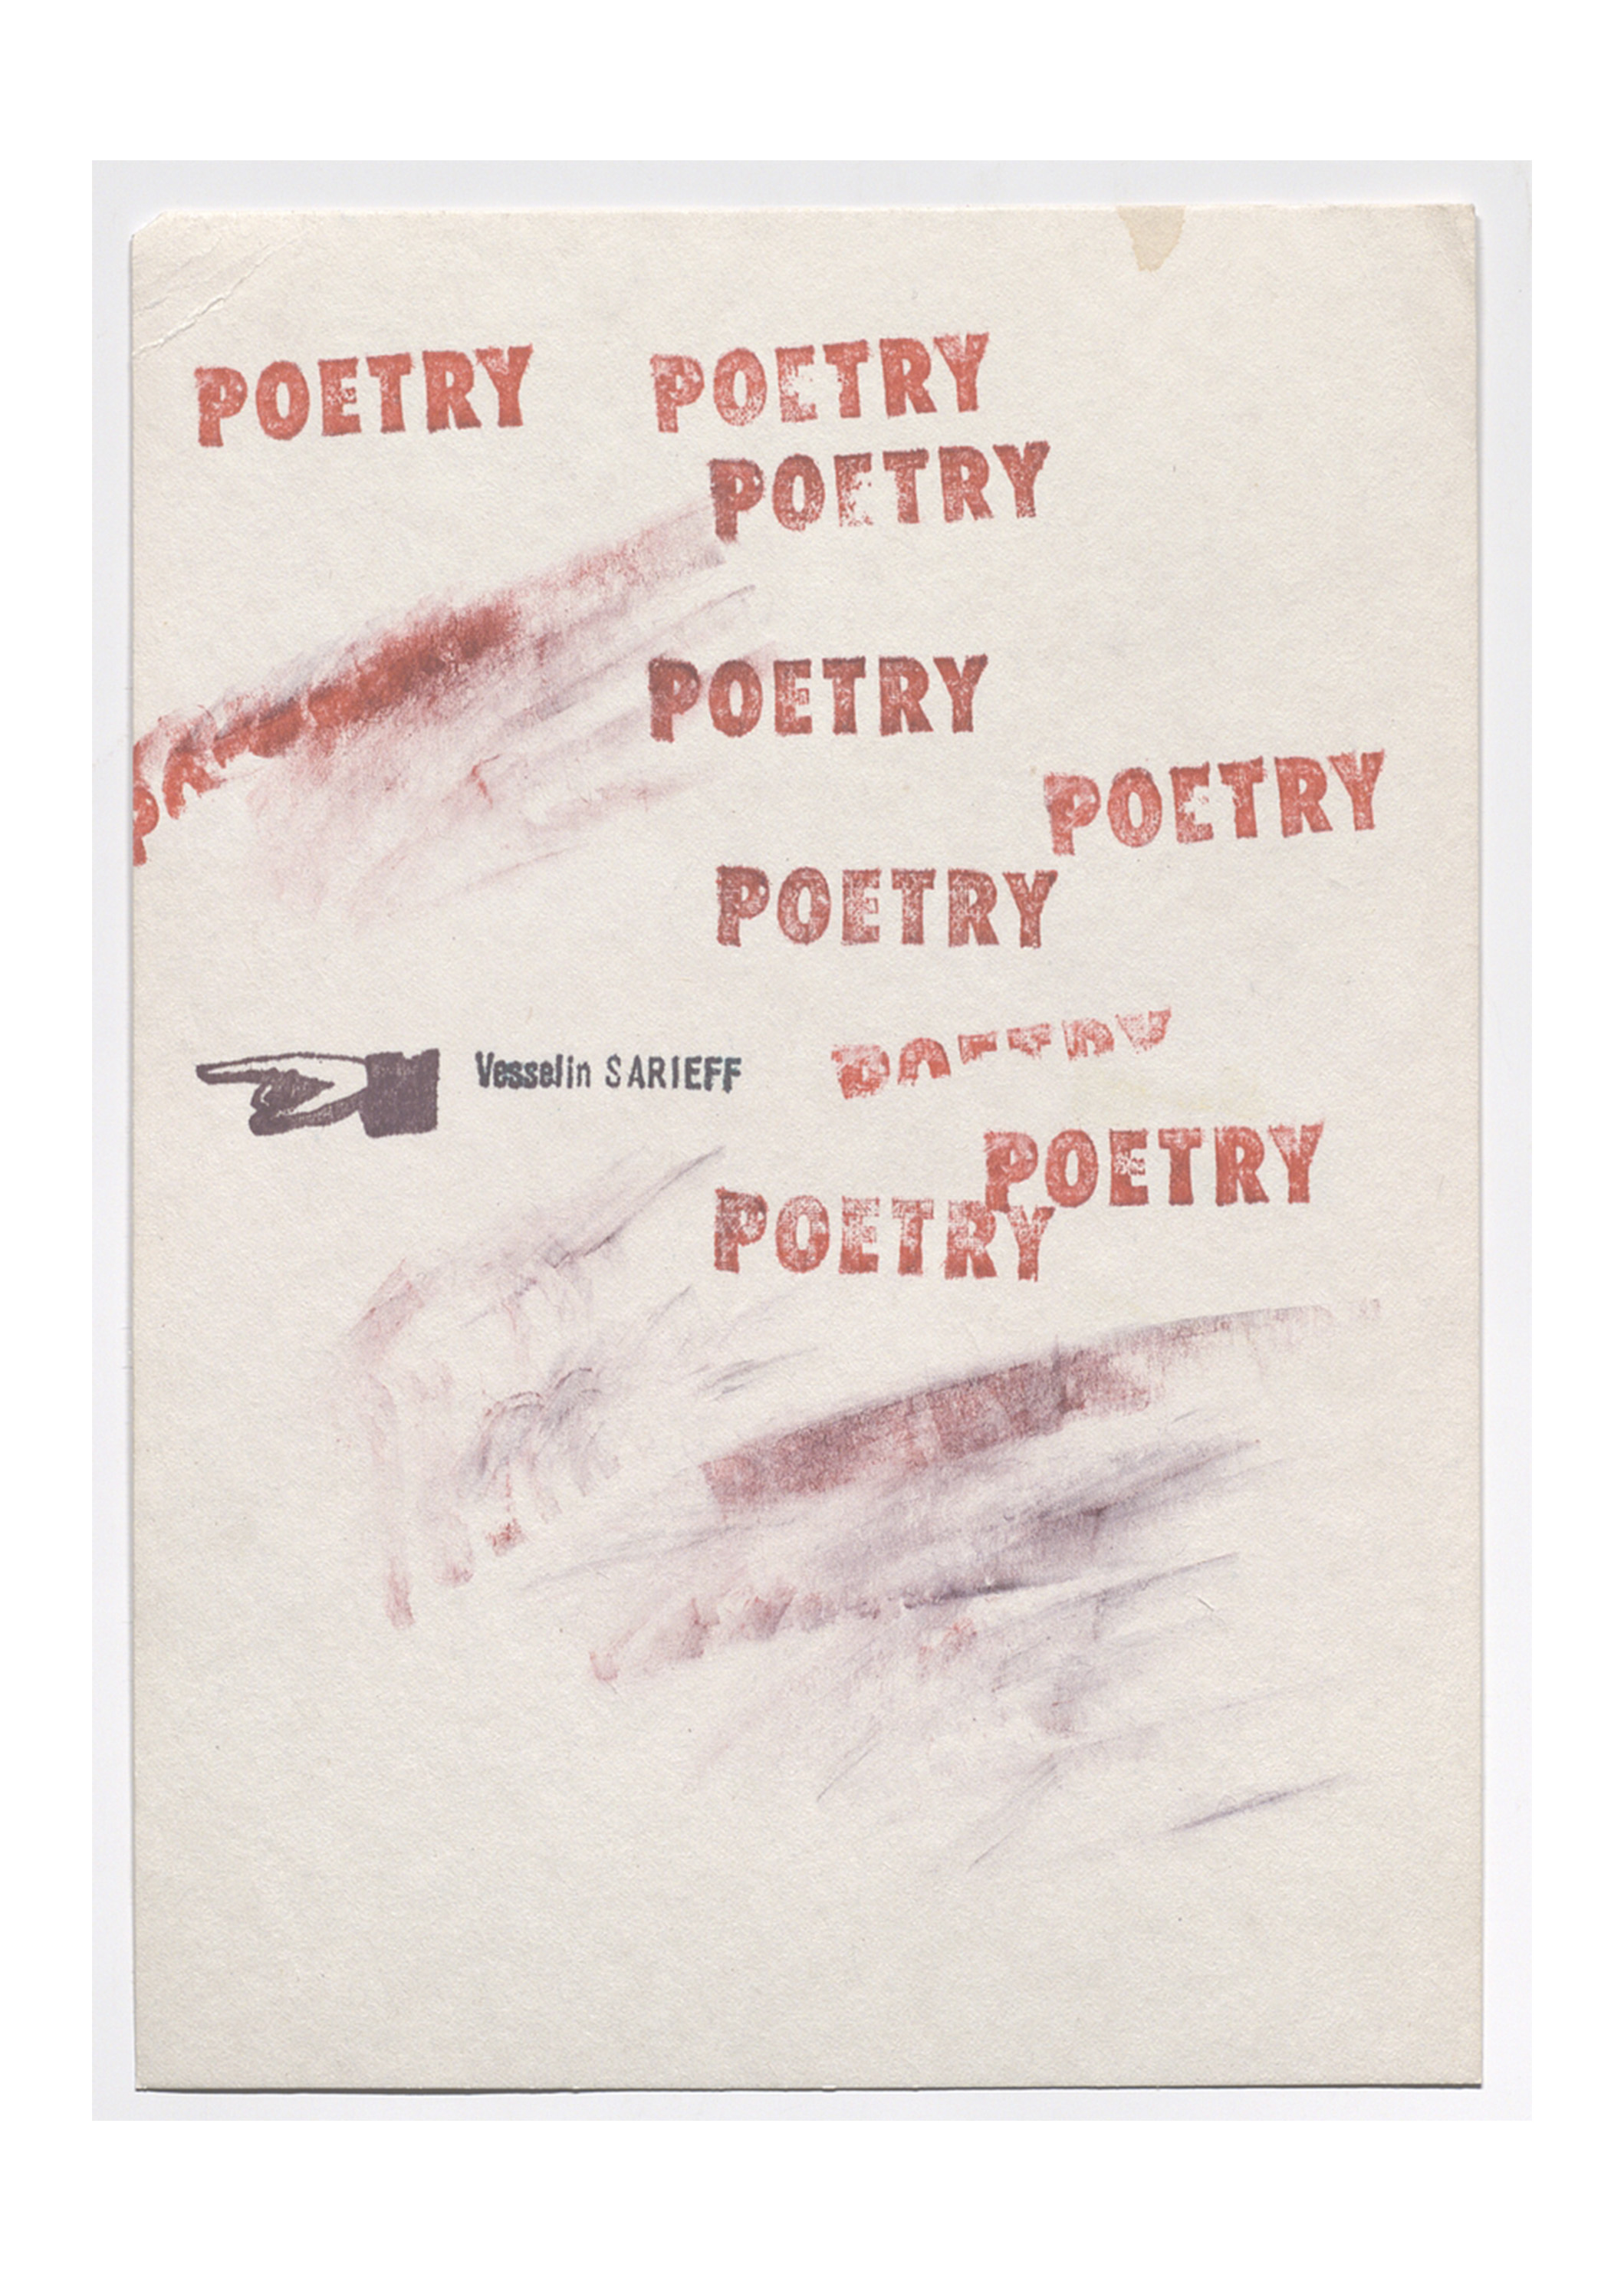 Visual poem “POETRY”, 1989